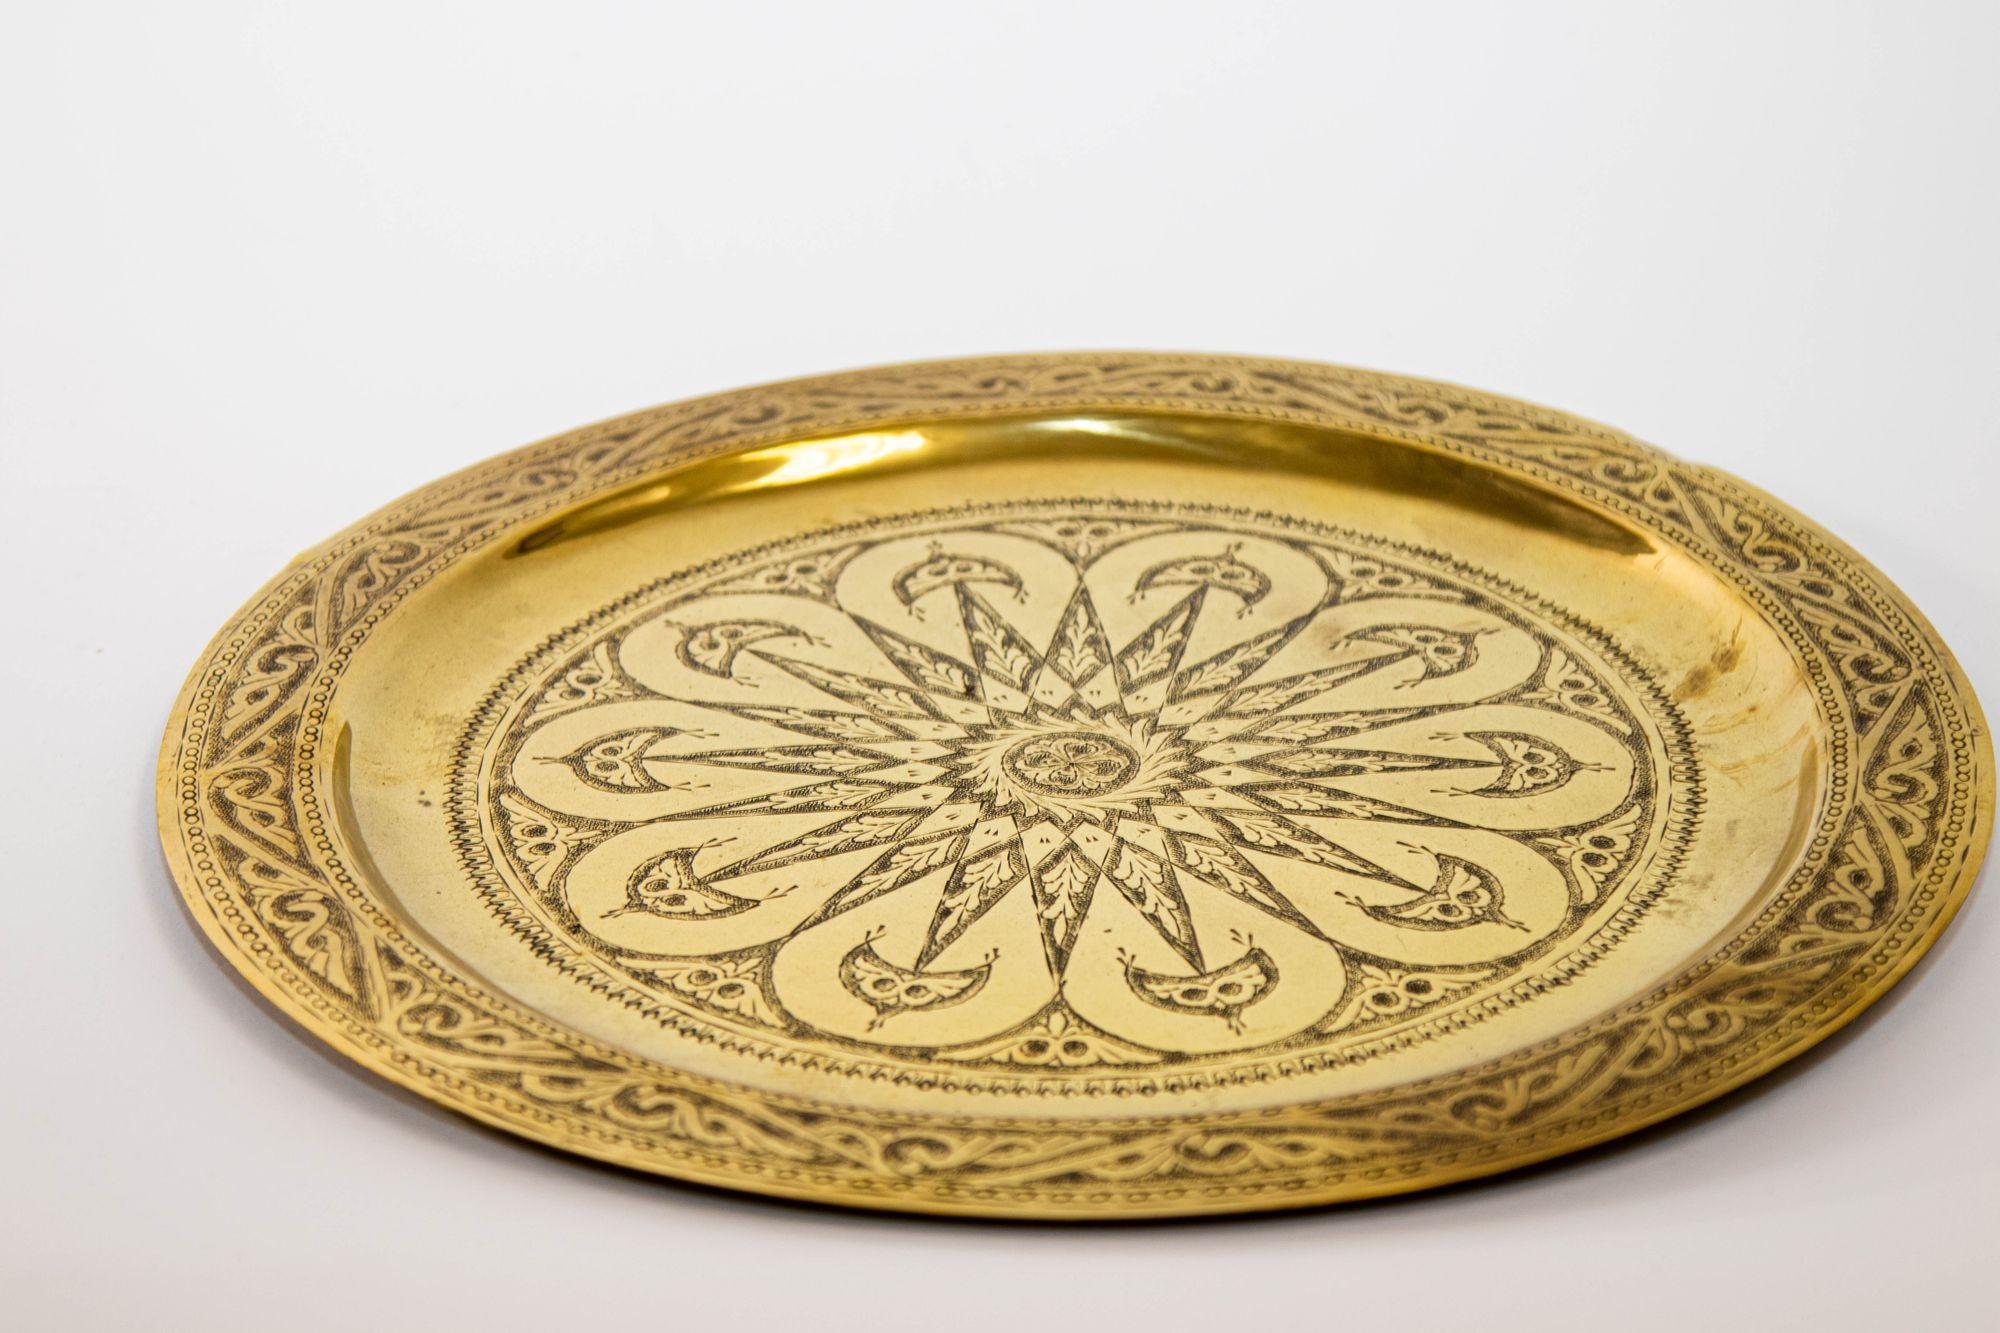 1940er Jahre marokkanischen Messing Tablett poliert Collectible islamischen Metallarbeit Platter.
Das islamische Metalltablett aus poliertem Messing ist ein bemerkenswertes Kunstwerk, das das reiche kulturelle Erbe und die Kunstfertigkeit der